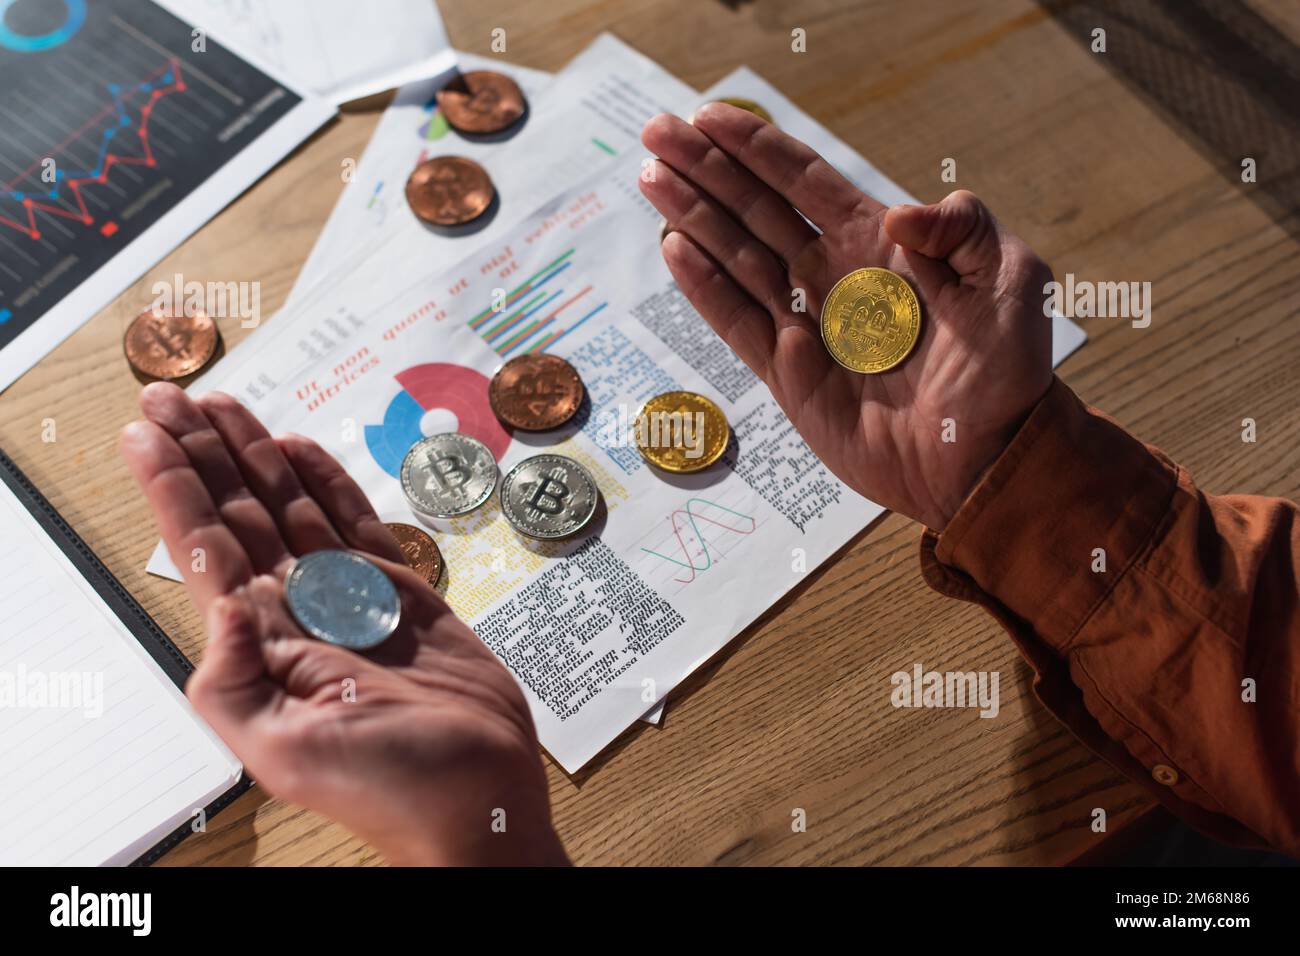 KIEW, UKRAINE - 17. NOVEMBER 2022: Draufsicht eines Geschäftsmanns mit silbernen und goldenen Bitcoins in der Nähe von Papieren mit Karten Stockfoto